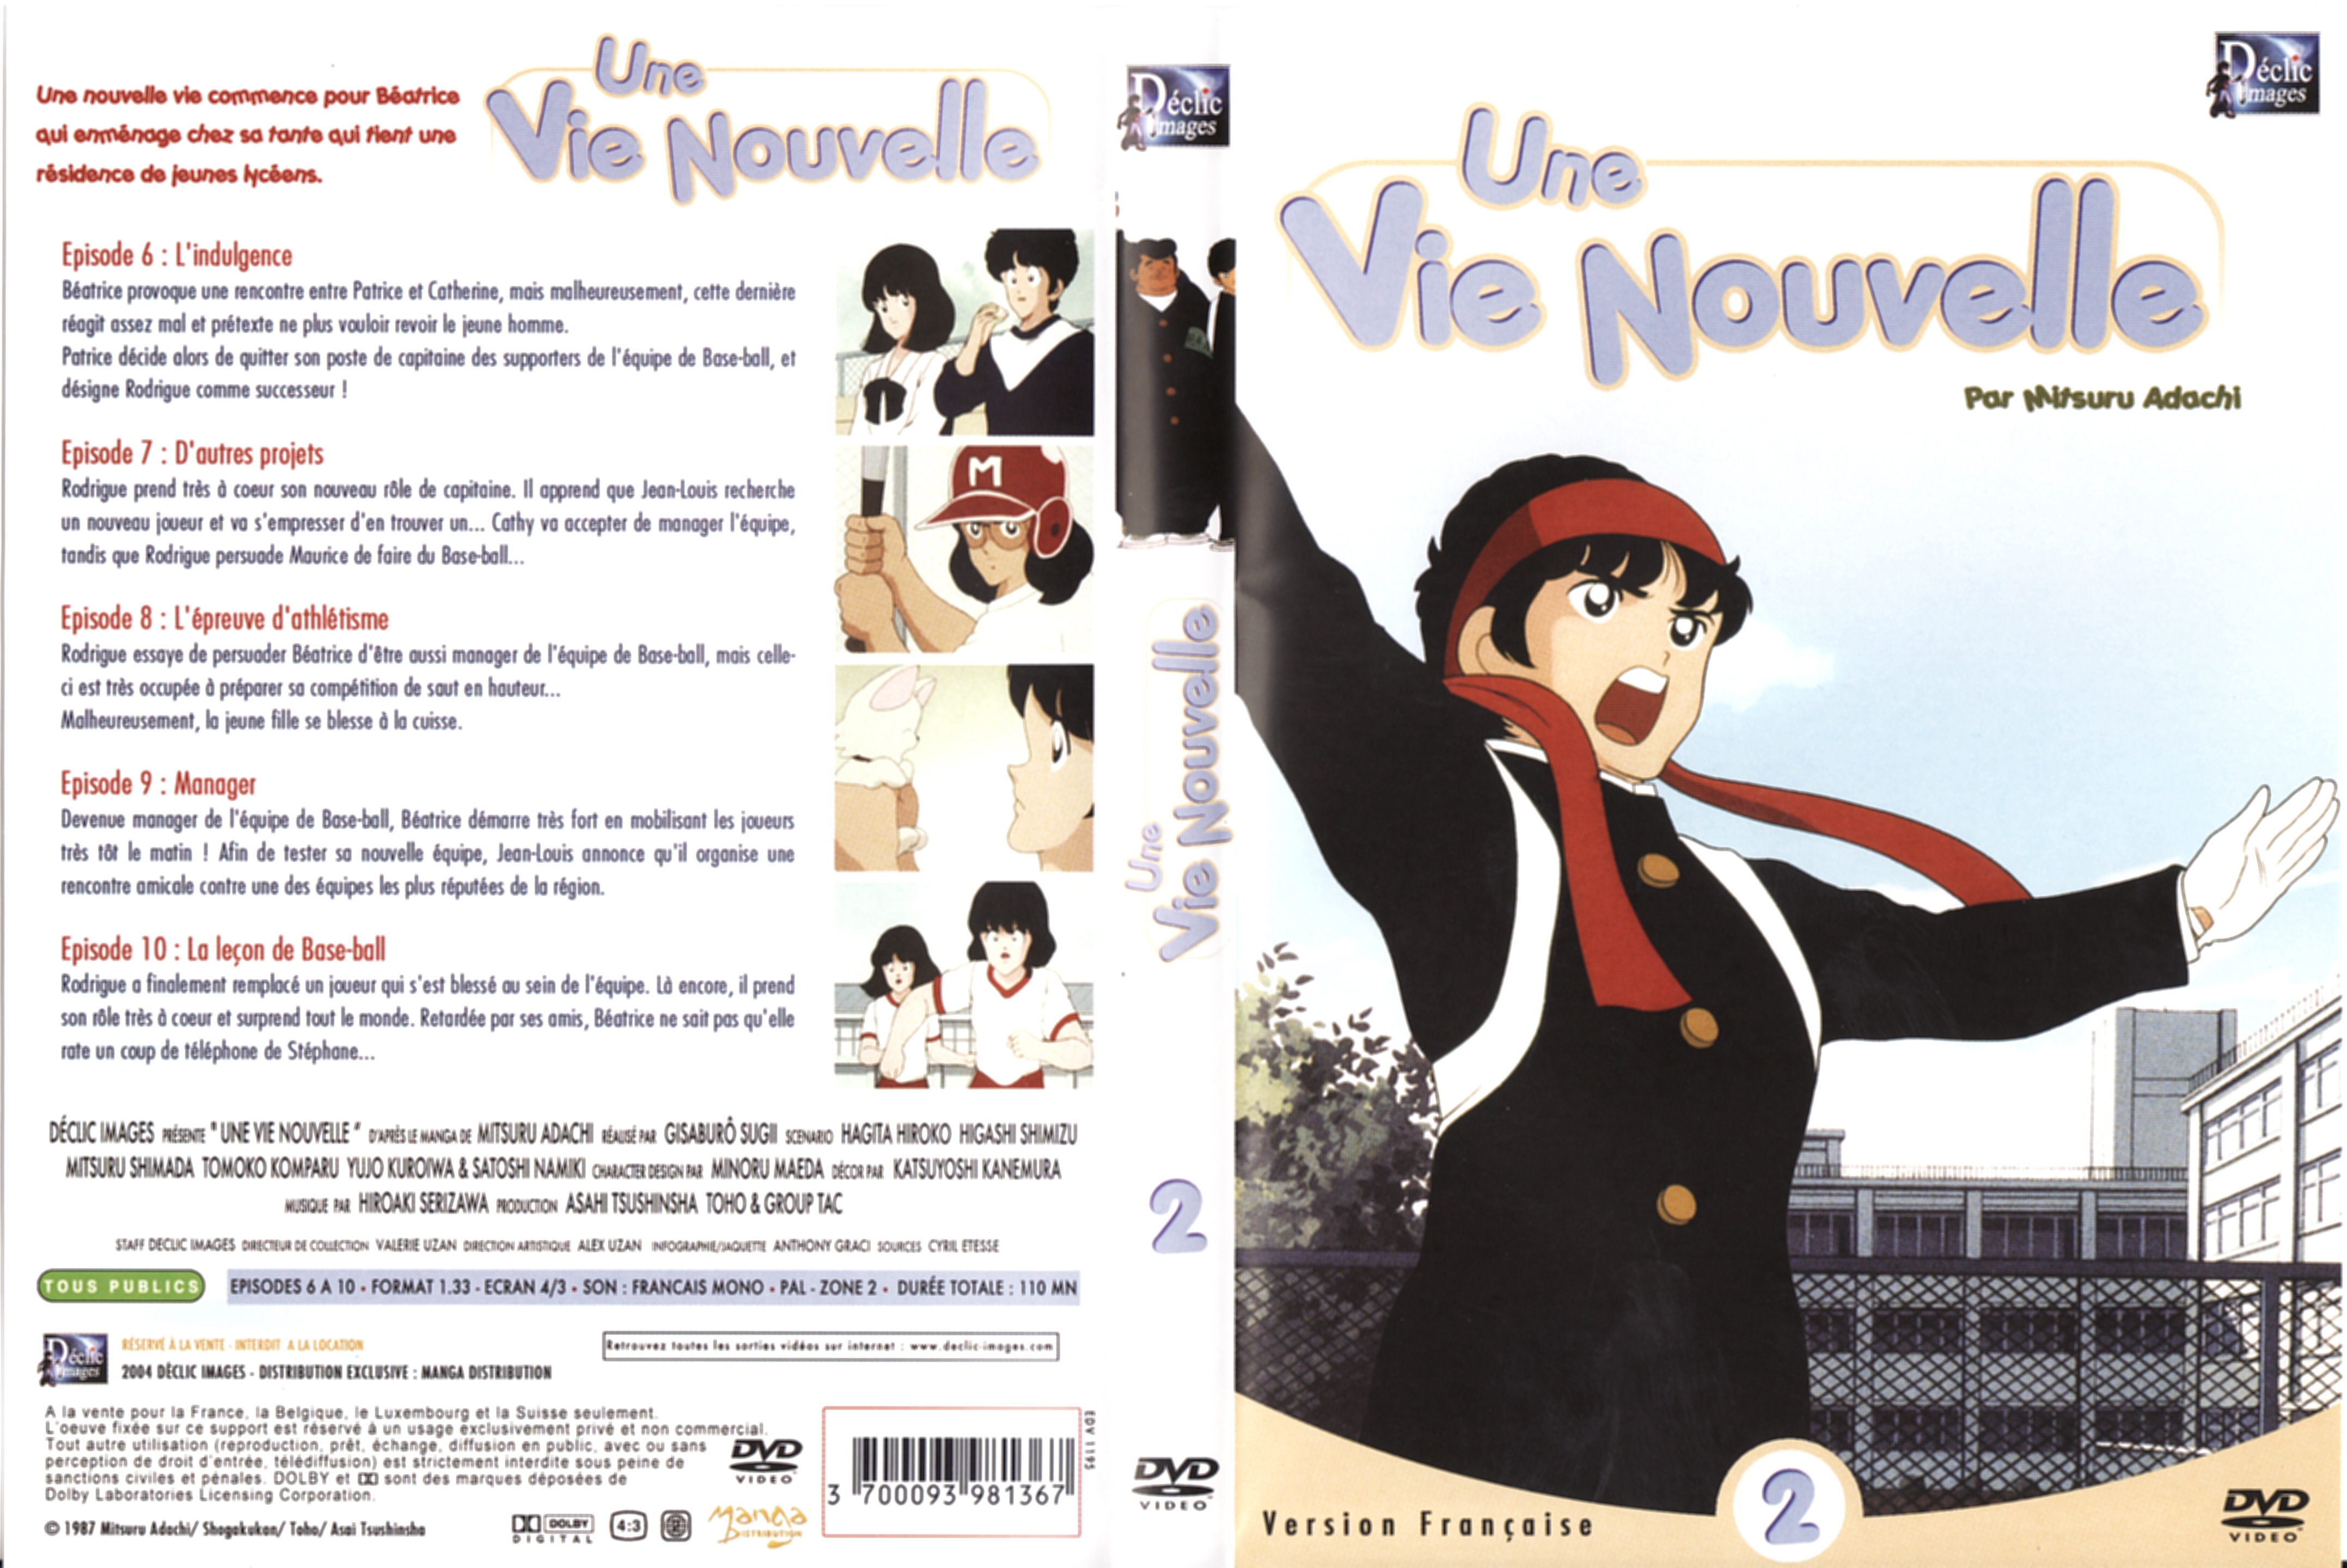 Jaquette DVD Une vie nouvelle vol 02